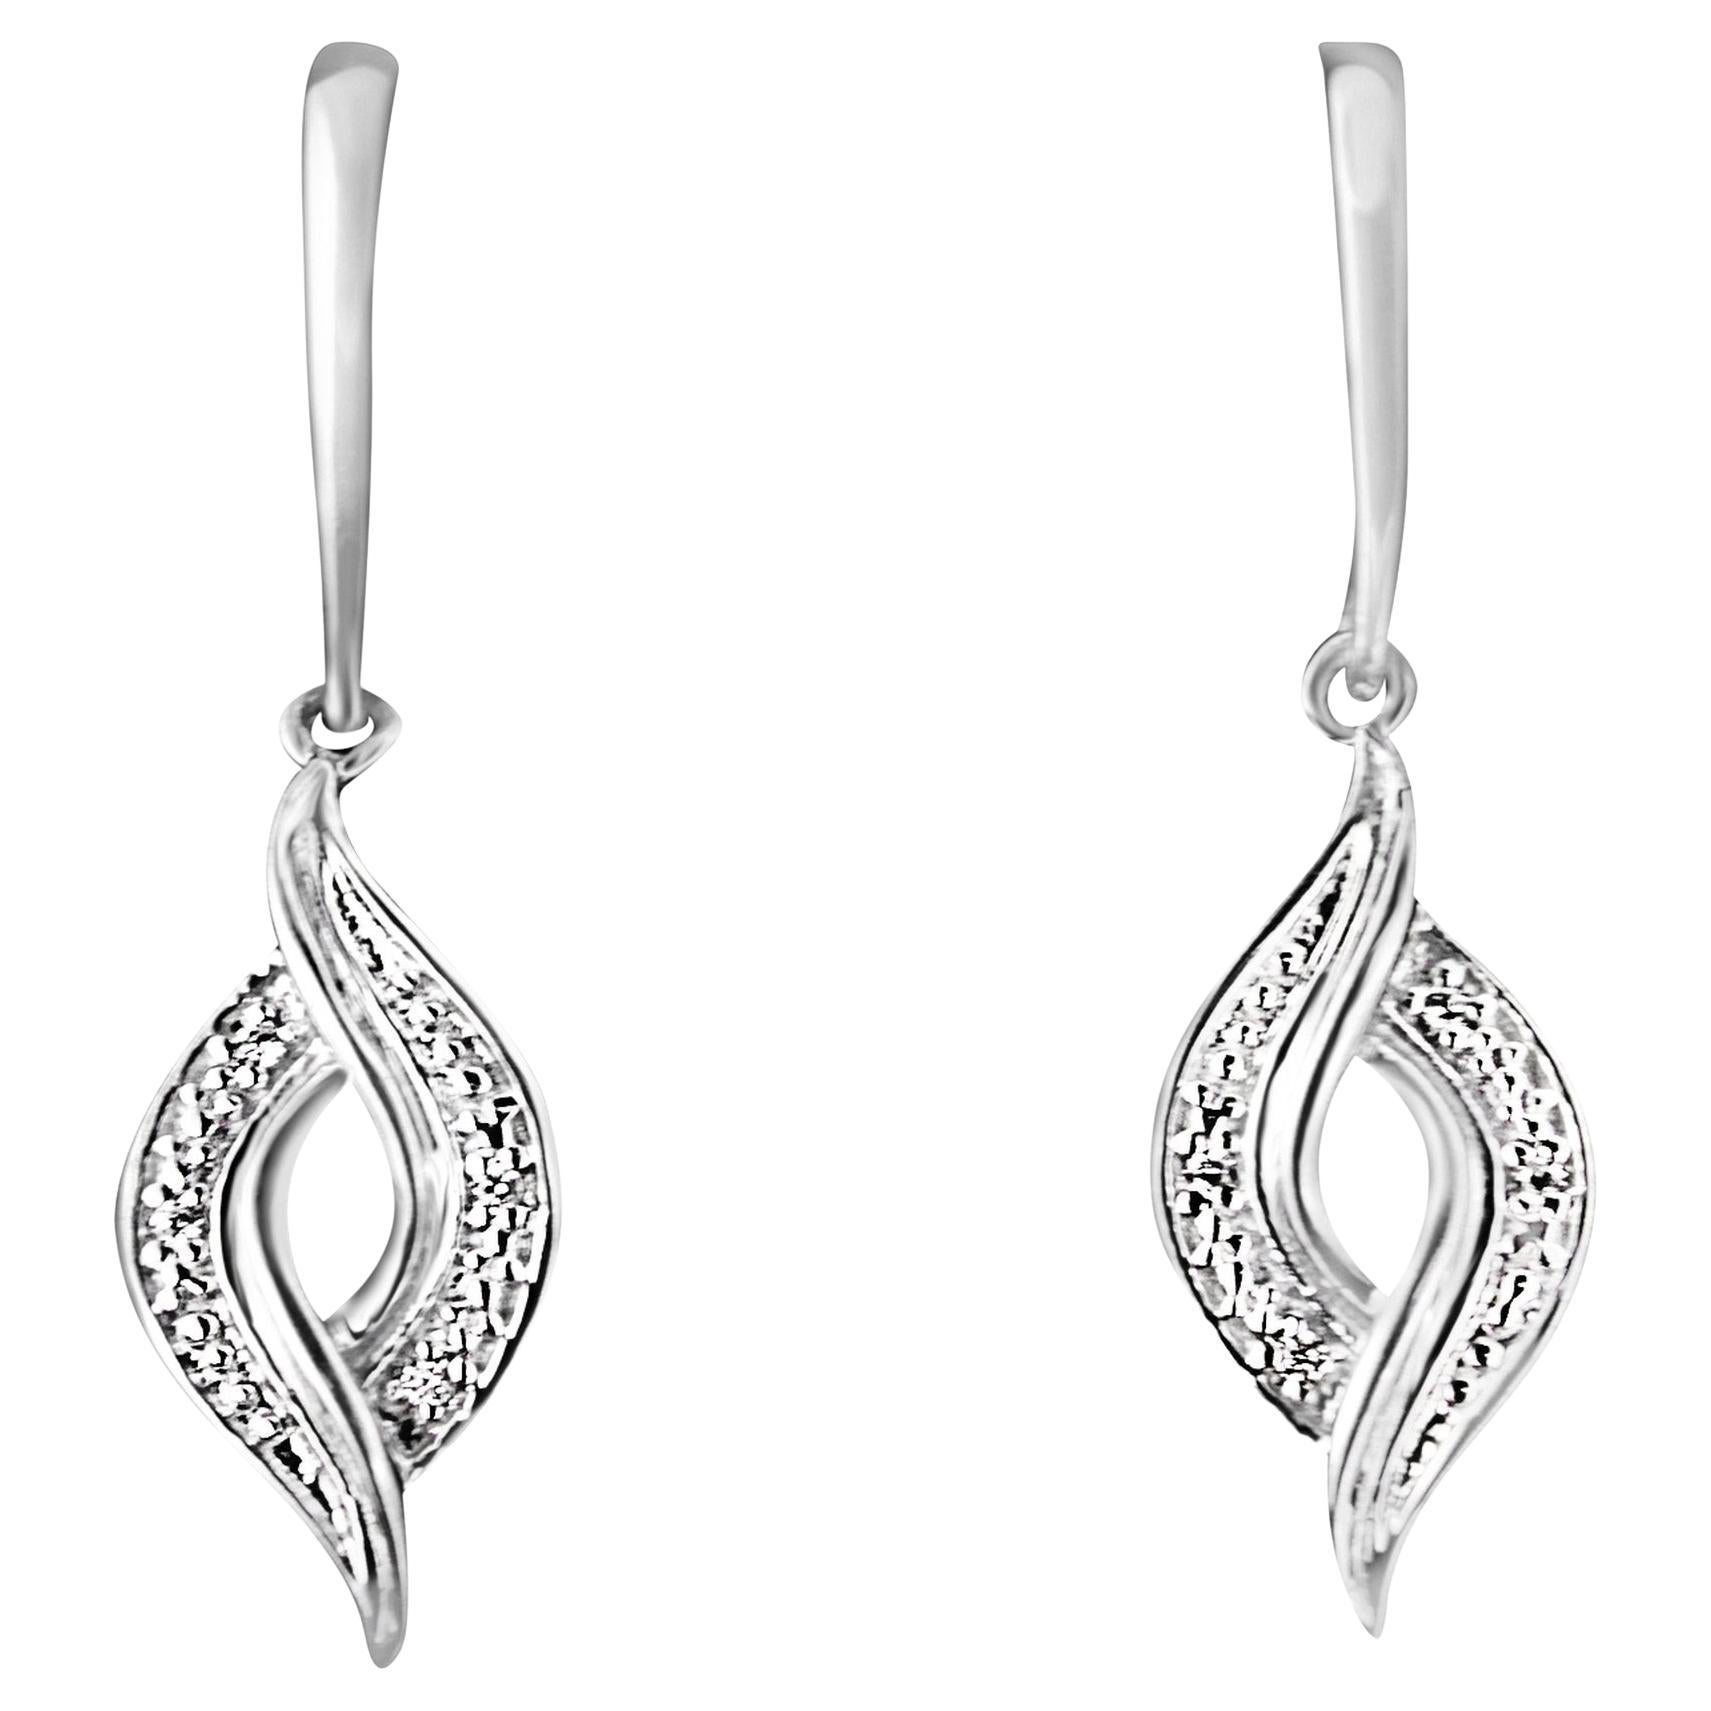 .925 Sterling Silver 1/20 Carat Round Cut Diamond Drop Earrings